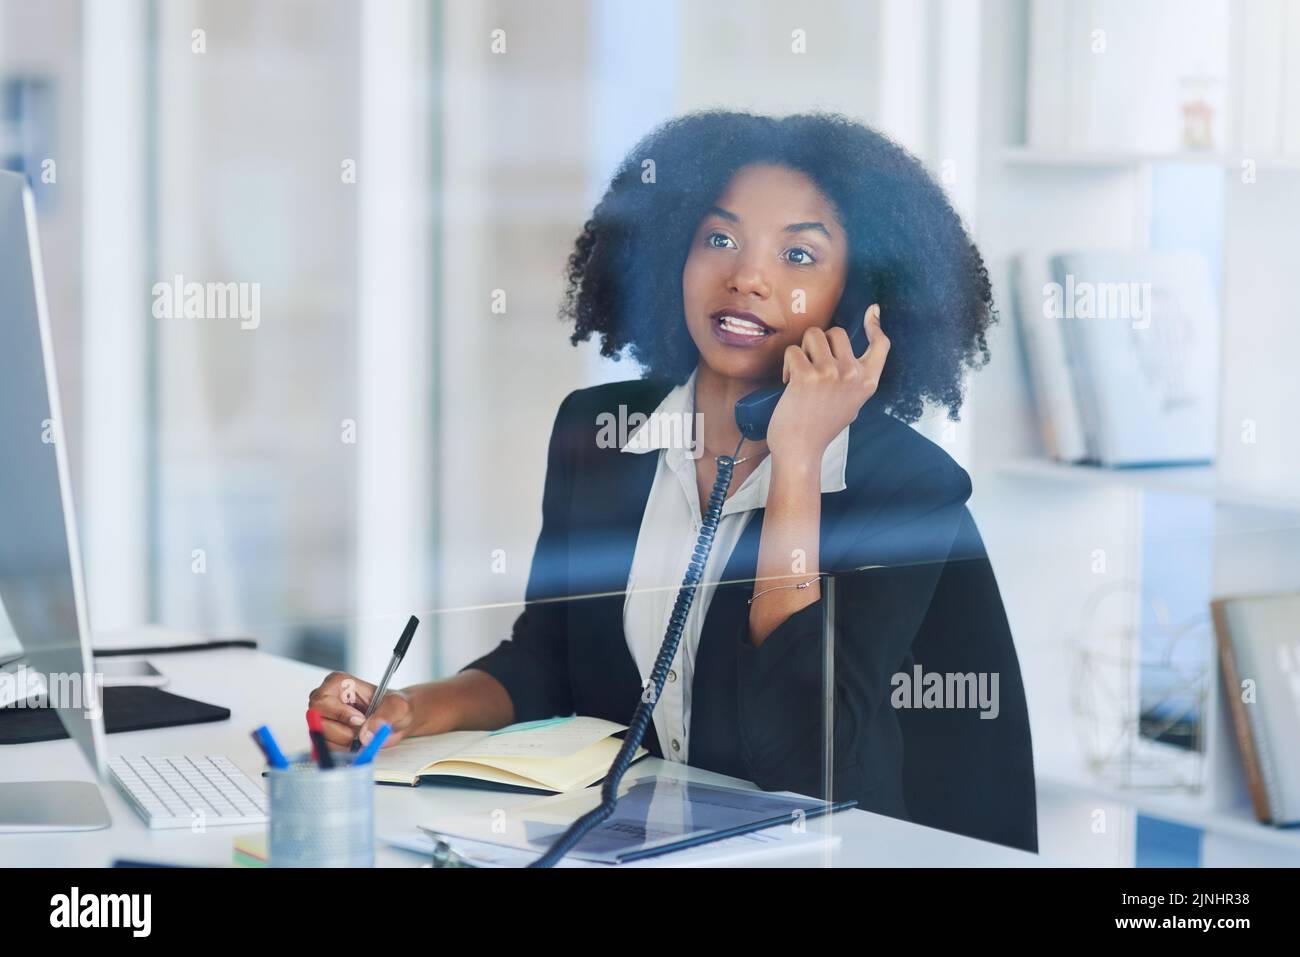 Estoy llamando para preguntar sobre algo... una joven empresaria hablando por teléfono en una oficina. Foto de stock